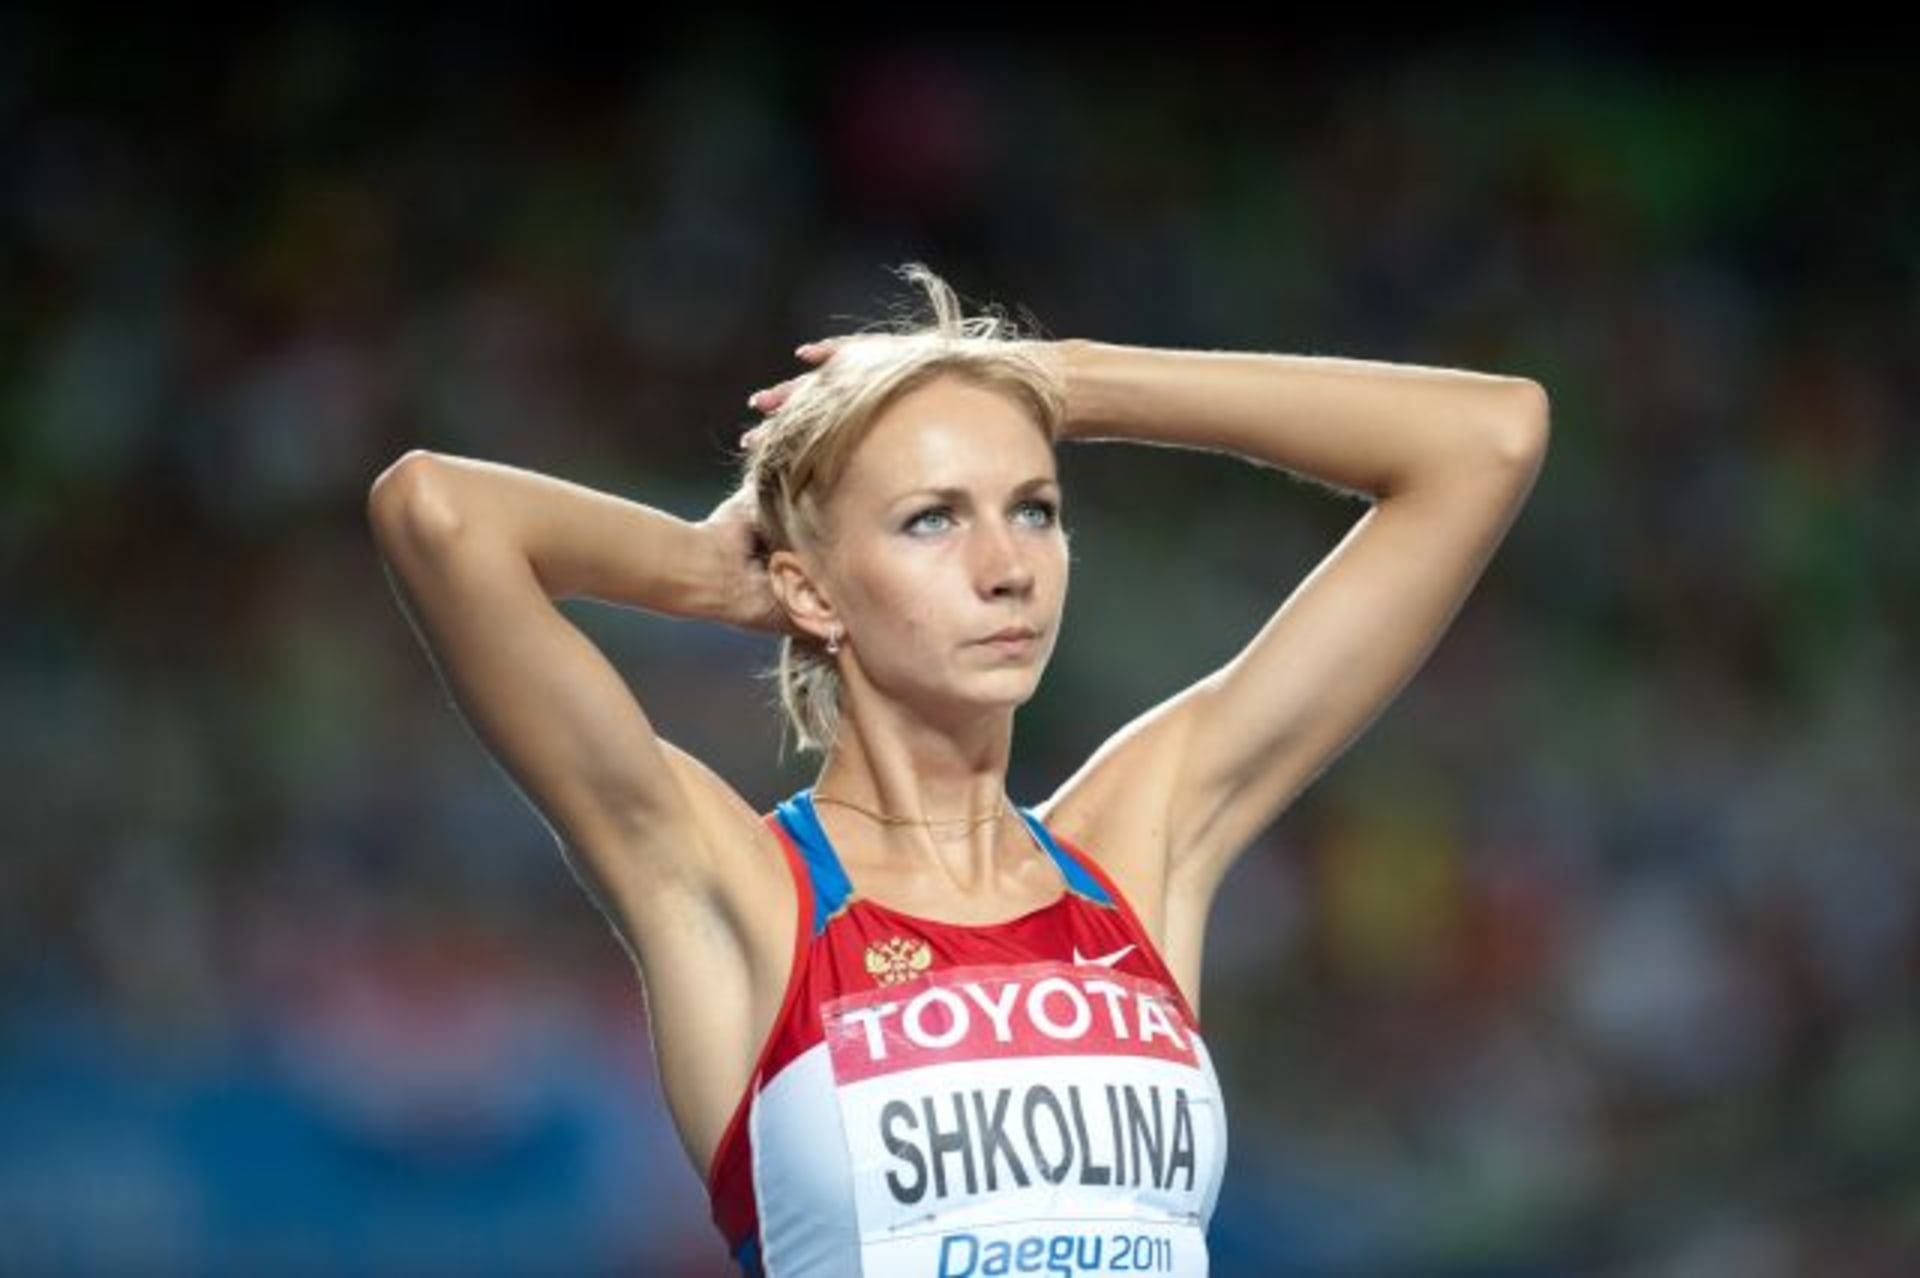 Světlana Školinová (Profilová fotografie)